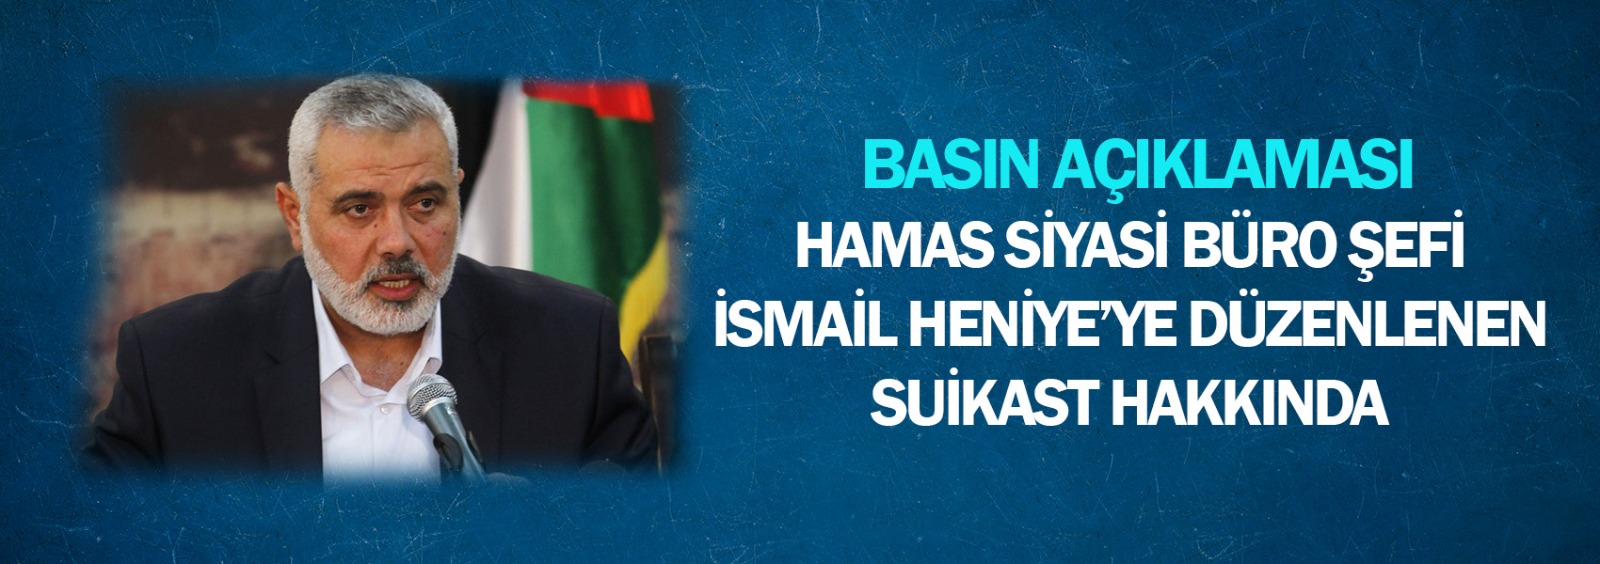 Hamas Siyasi Büro Şefi İsmail Heniye’ye Düzenlenen Suikast Hakkında  Basın Açıklaması